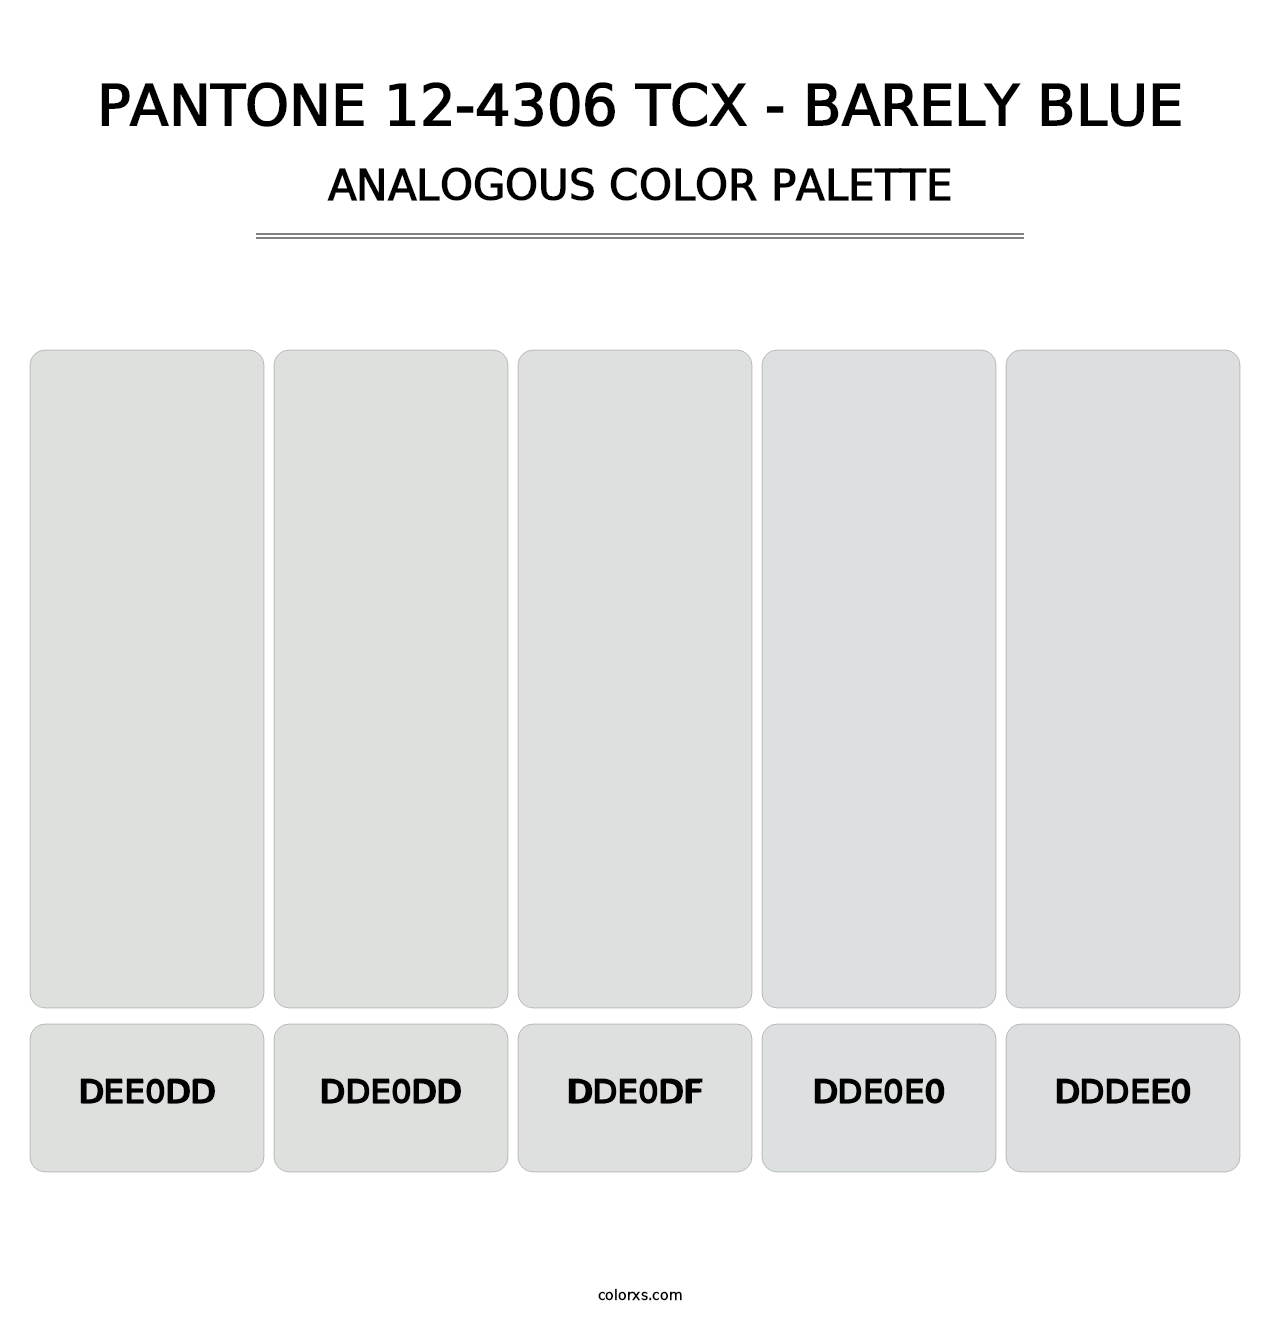 PANTONE 12-4306 TCX - Barely Blue - Analogous Color Palette